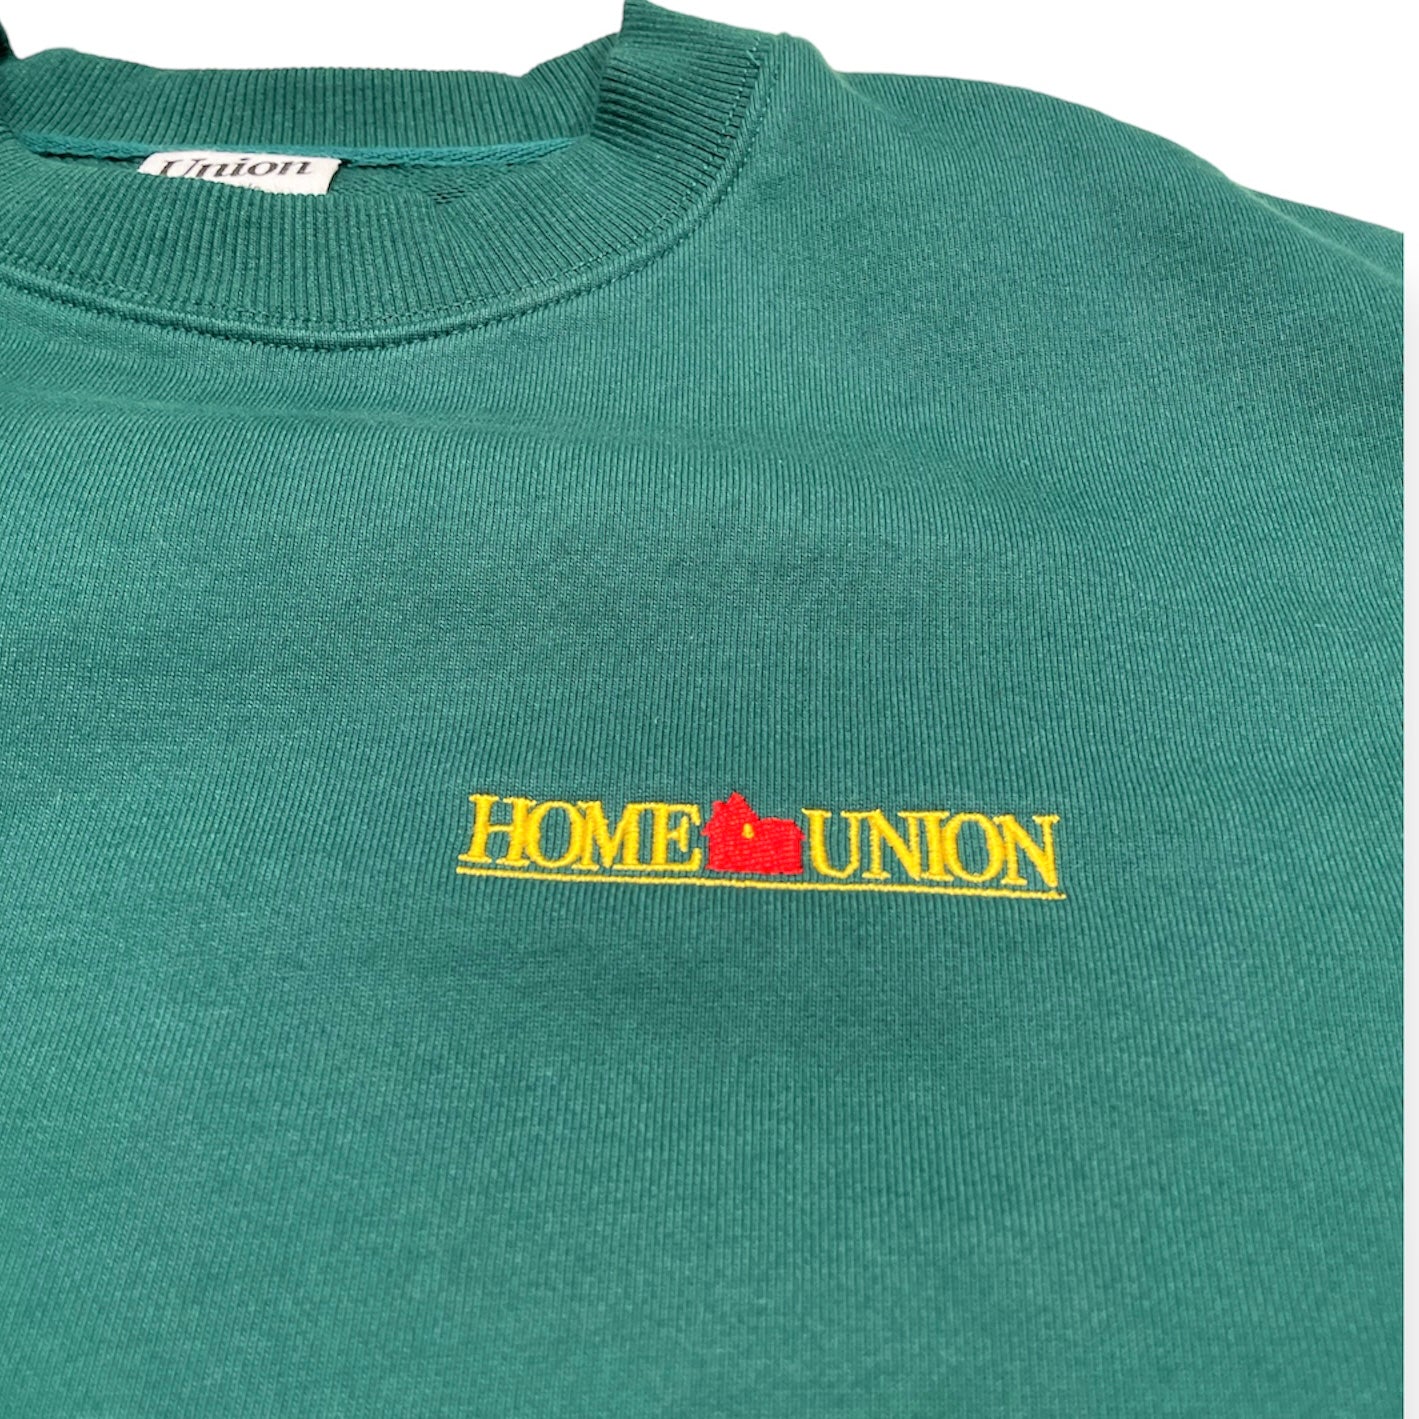 【UNION originals - ユニオンオリジナルス】HOME UNION スウェット トレーナー/グリーン